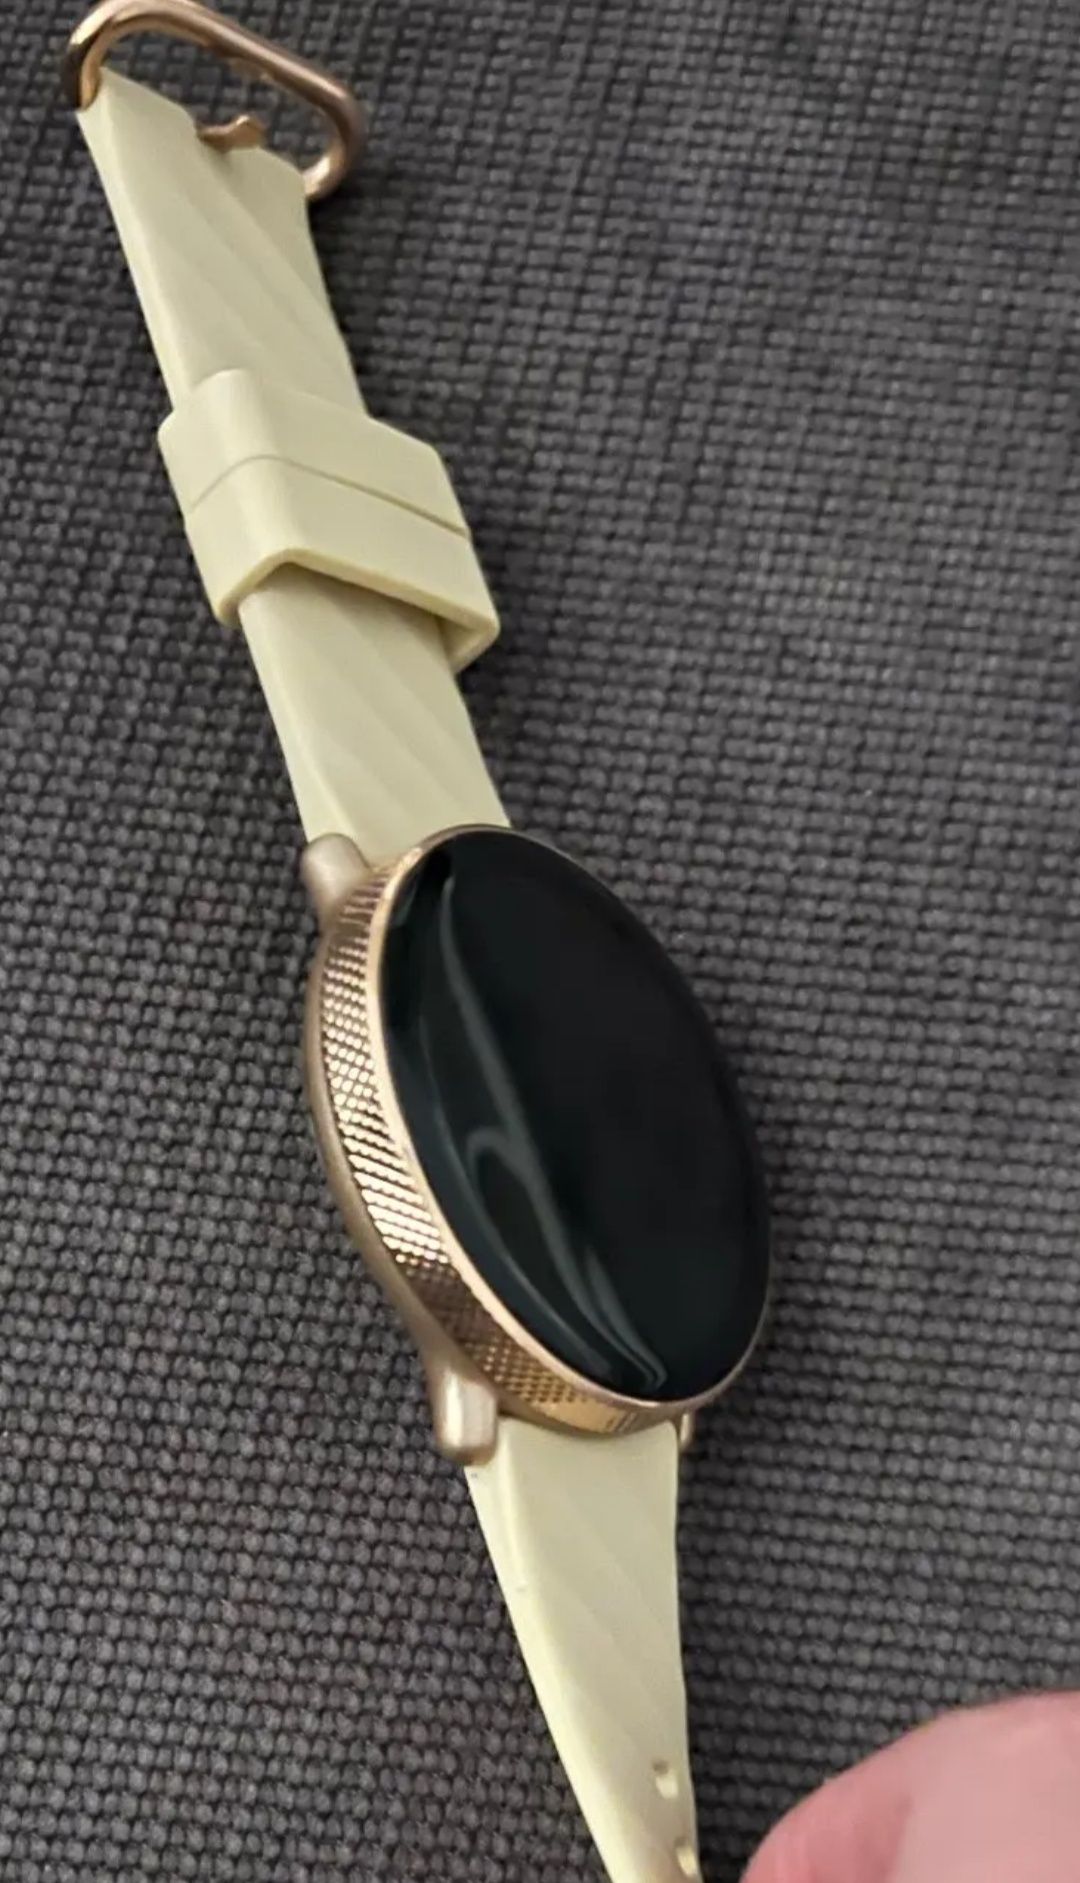 NOWY!   smartwatch Zeblaze GTR 3 pro złoty Amoled, bluetooth calling